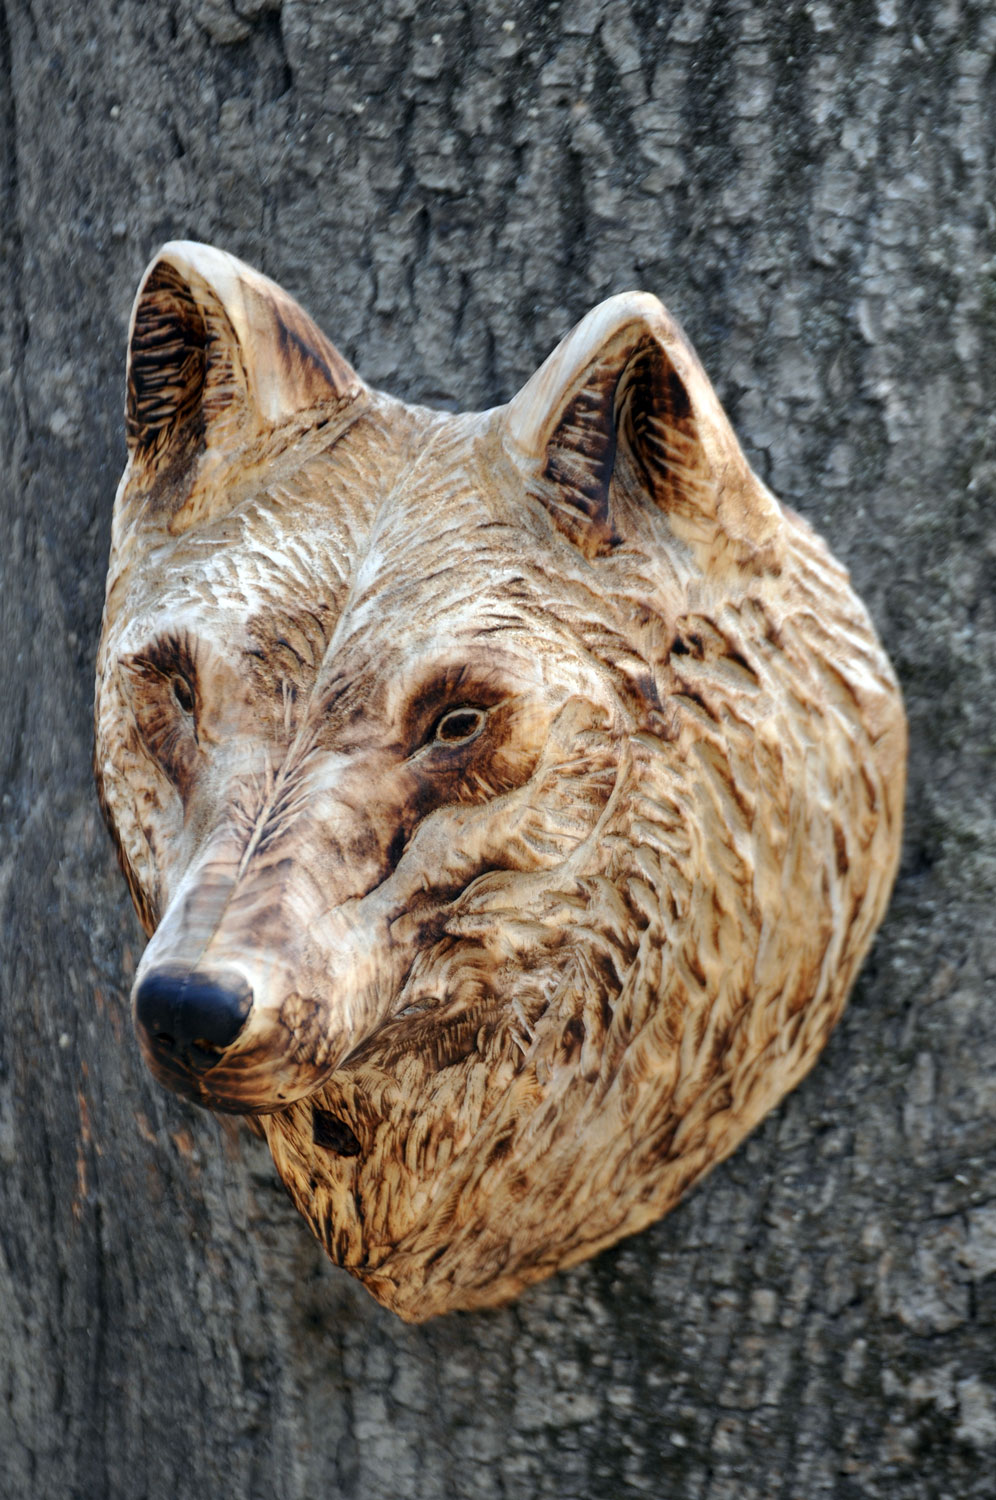 vlk-drevorezba-plastika-vyrezavani-carwing-woodcarving-trofej-hlava-radekzdrazil-20190331-03